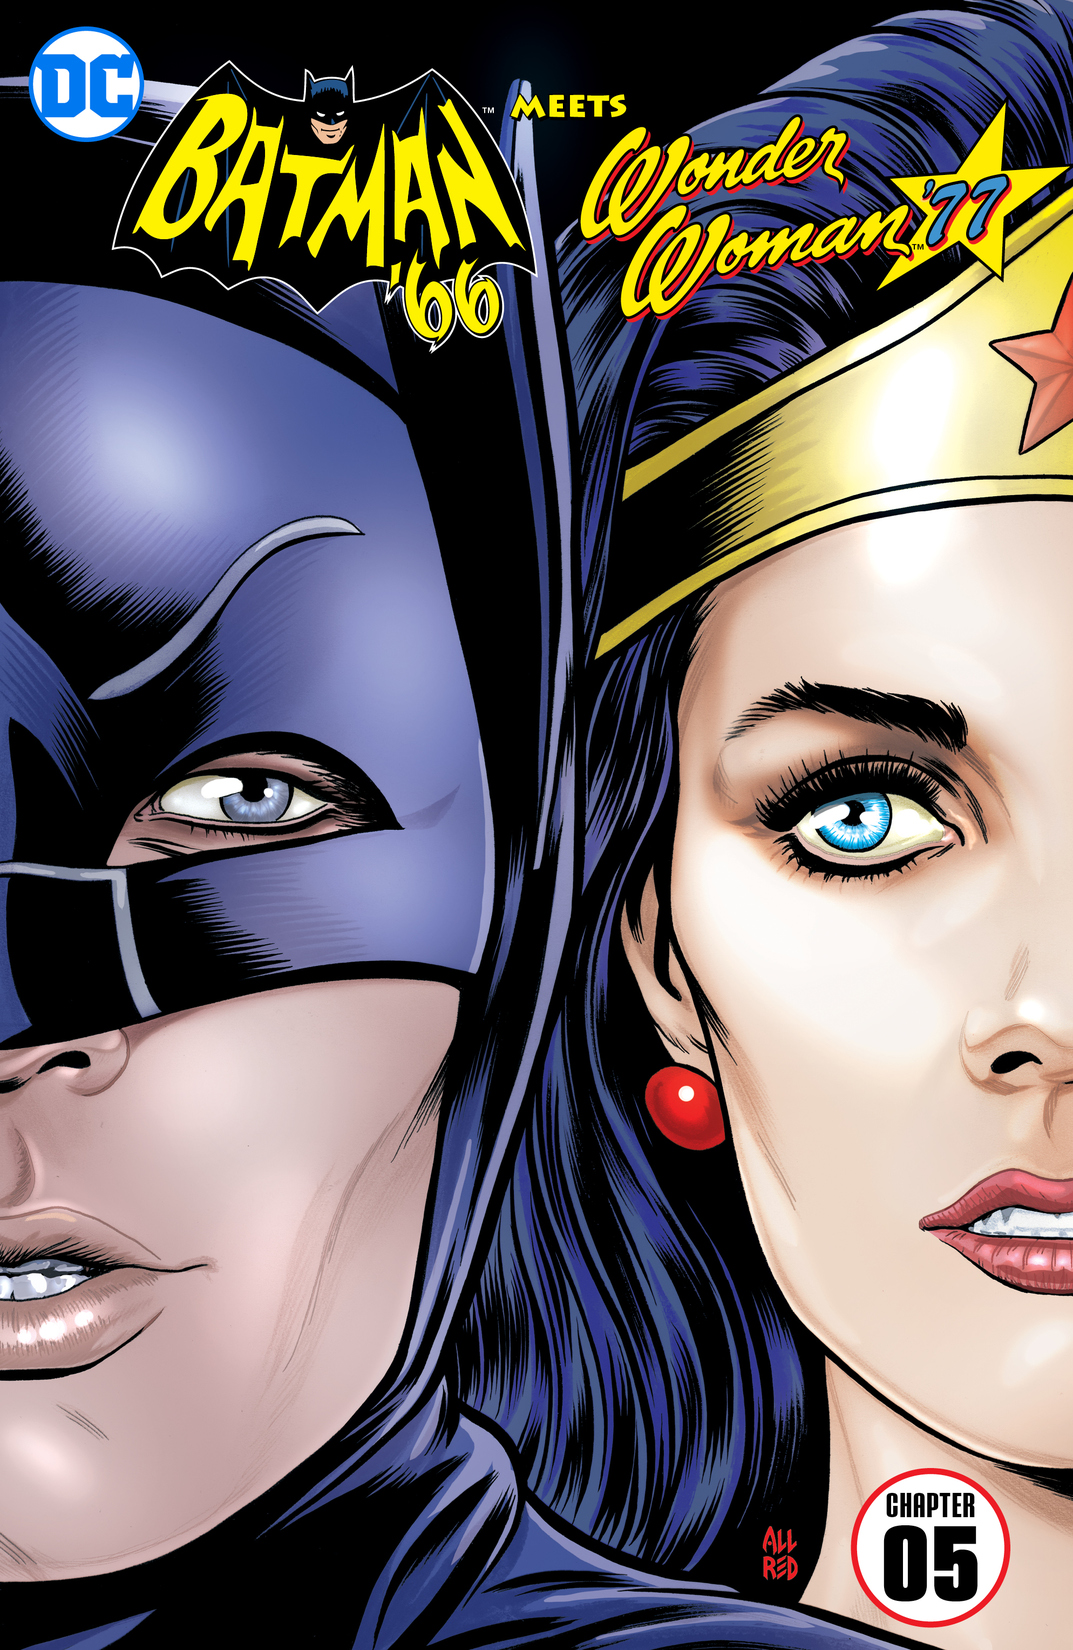 Batman '66 Meets Wonder Woman '77 #5 preview images